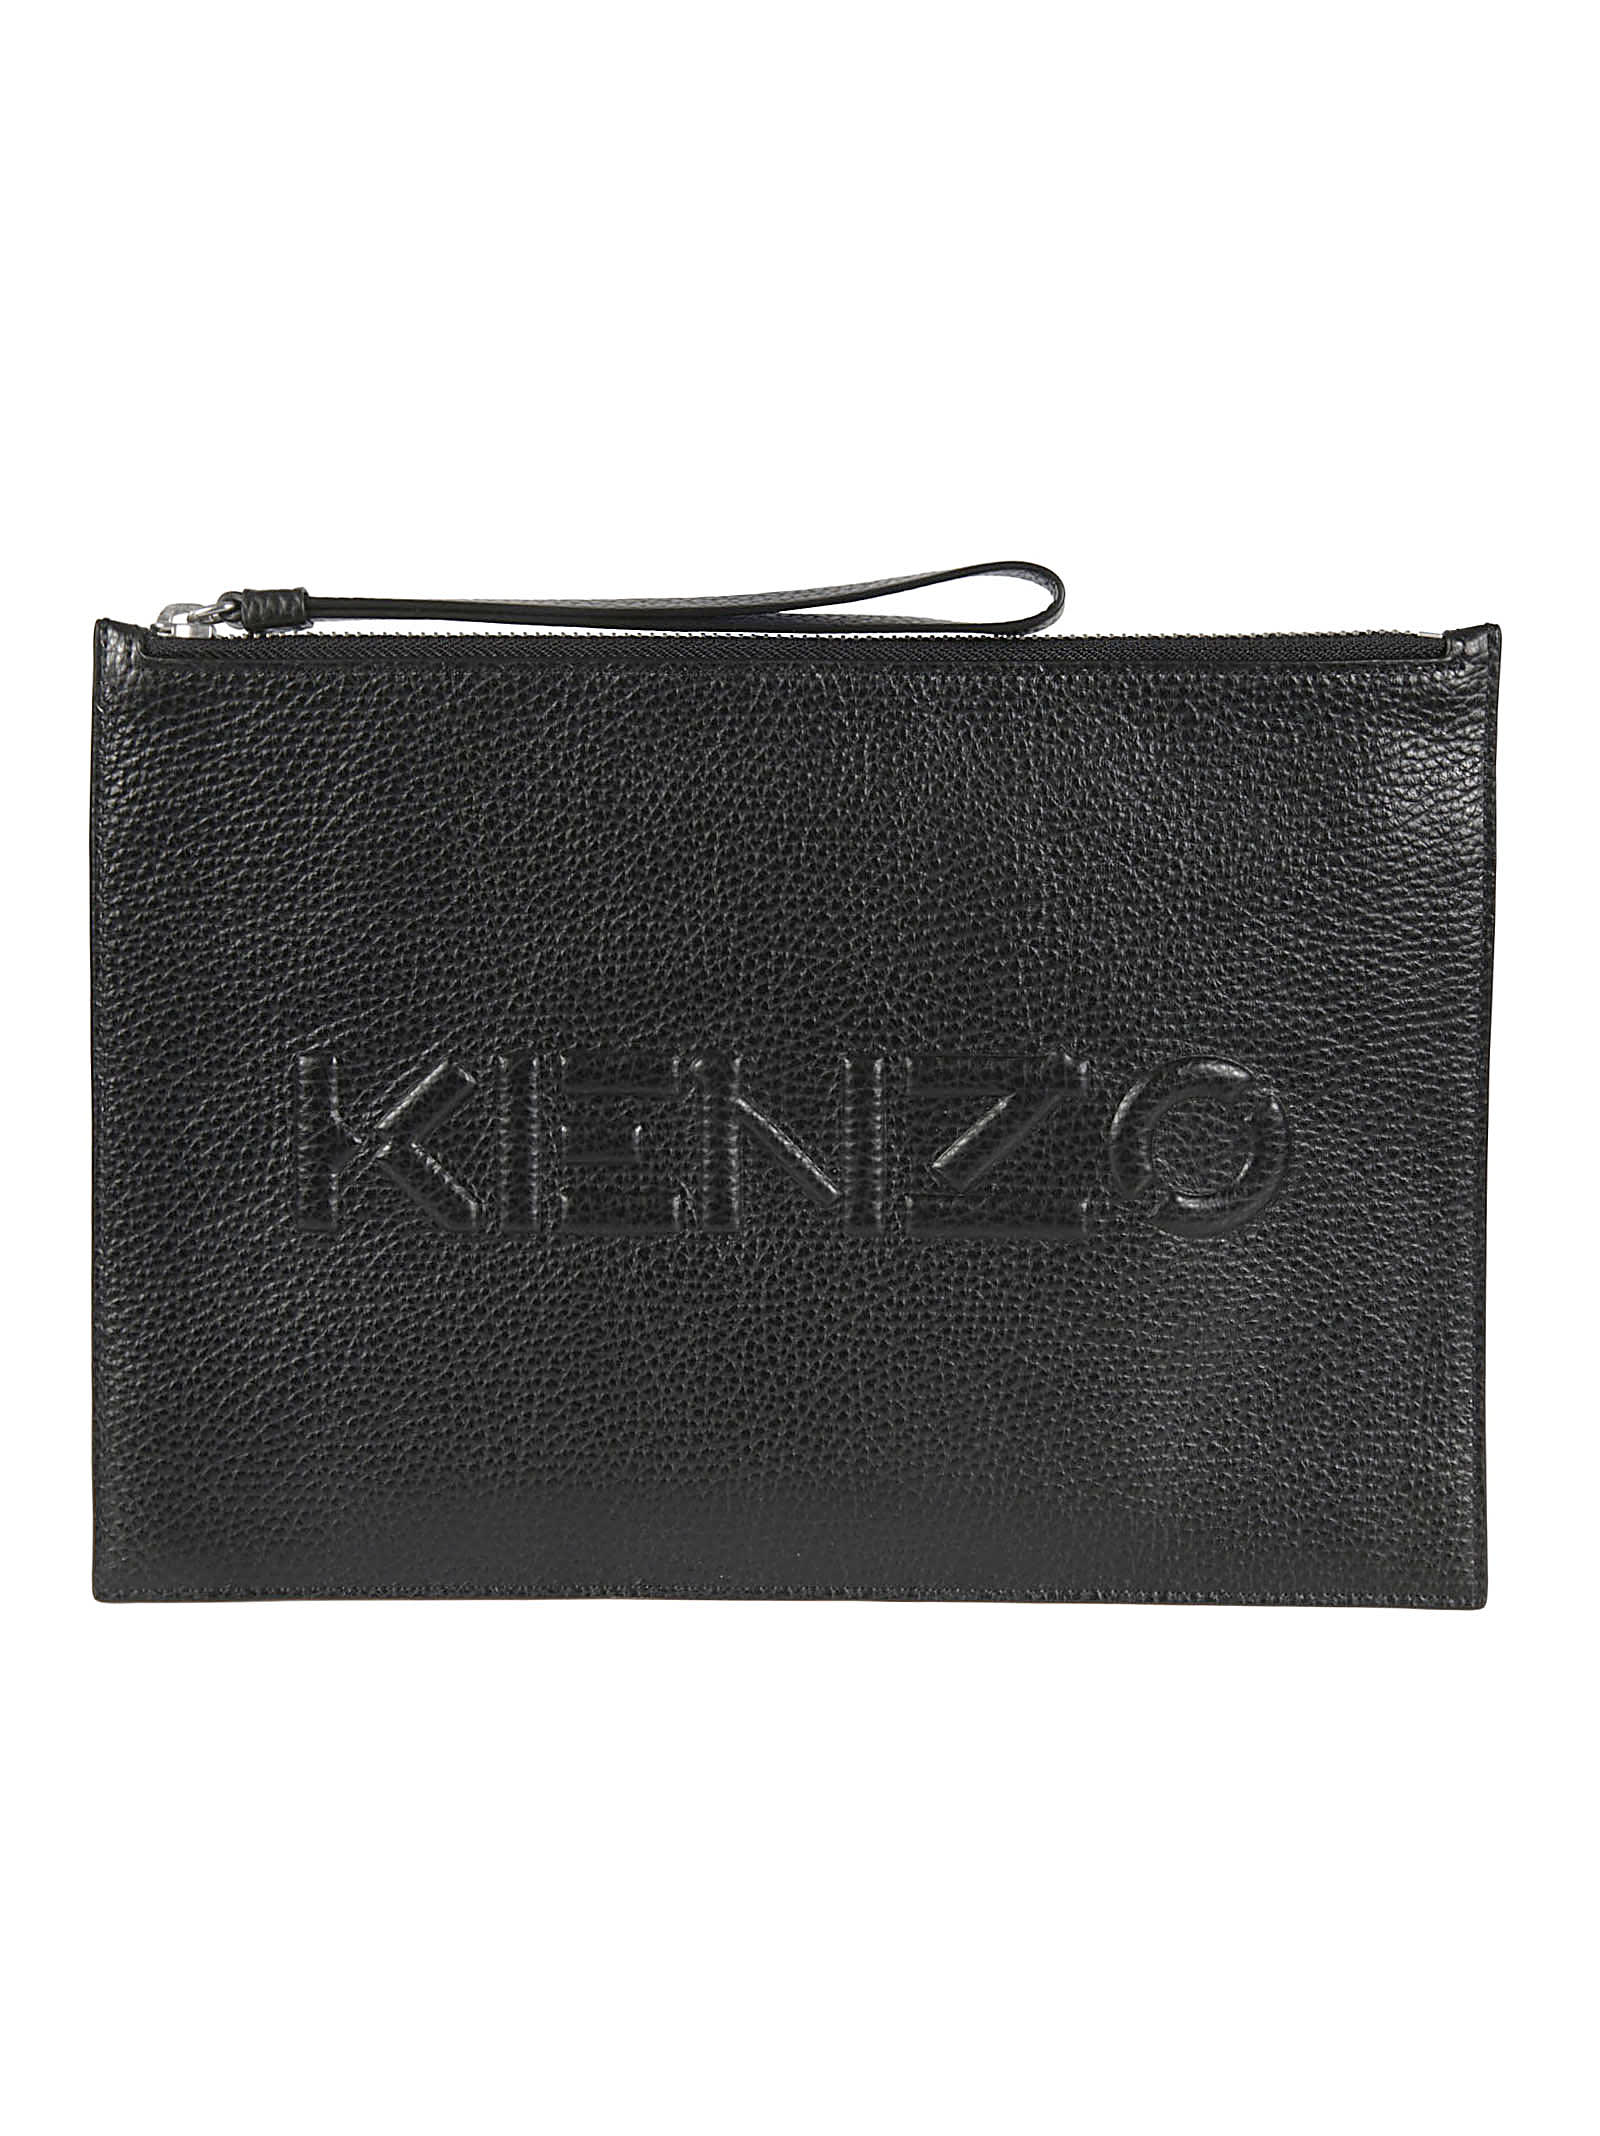 Kenzo Logo Clutch